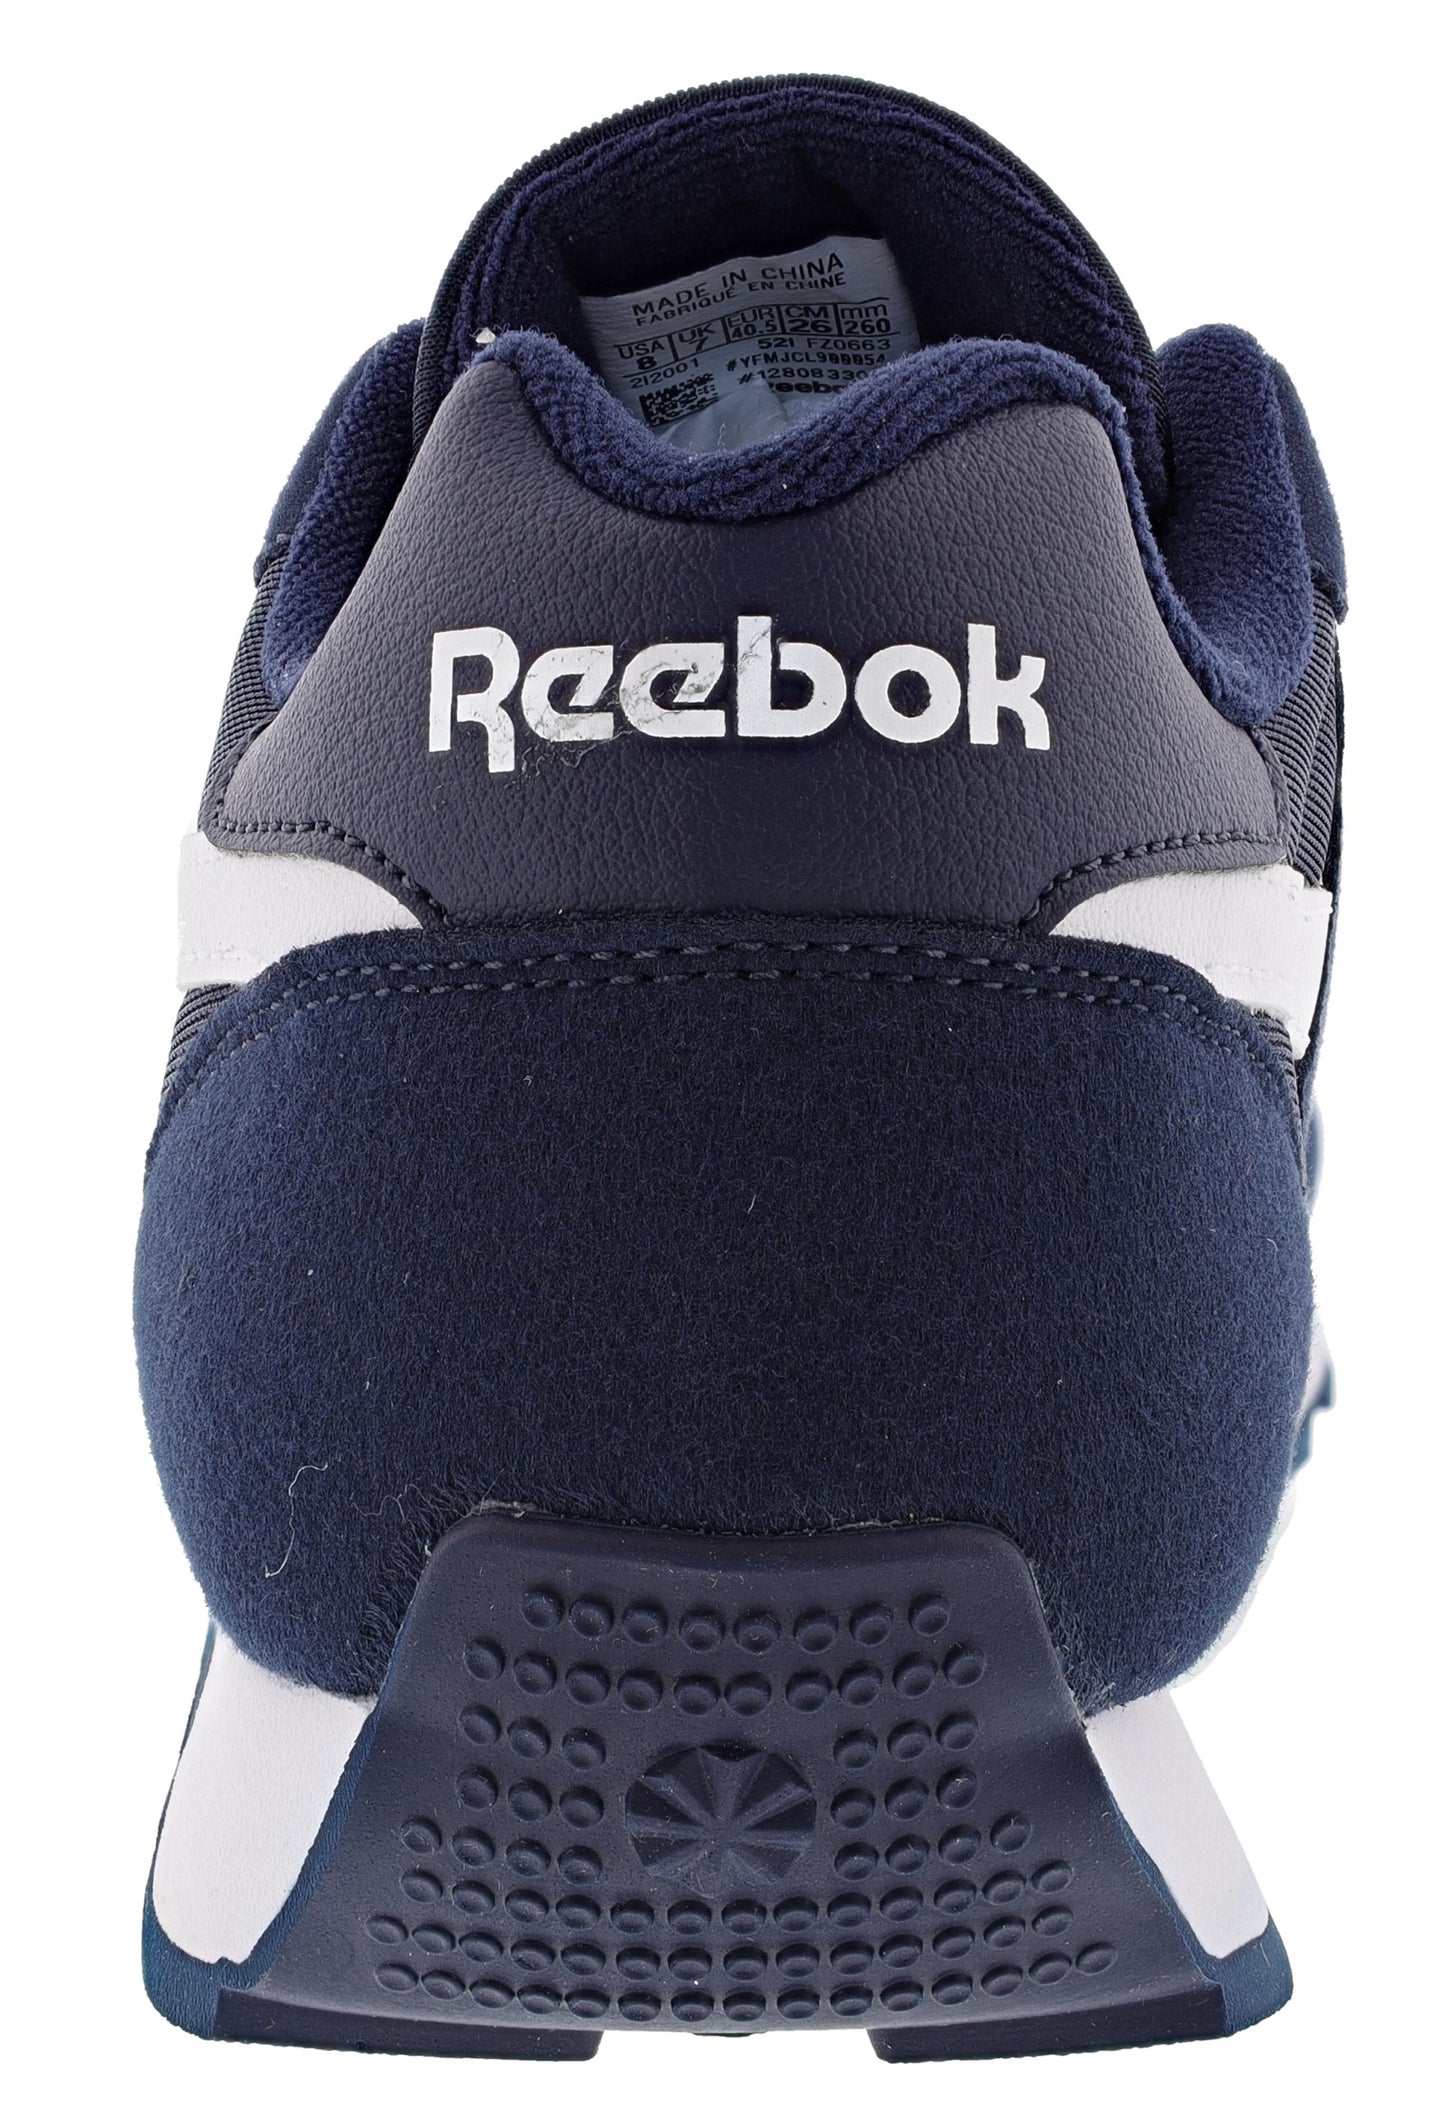 
                  
                    Reebok Unisex Rewind Run Classic Lightweight Running Shoes
                  
                